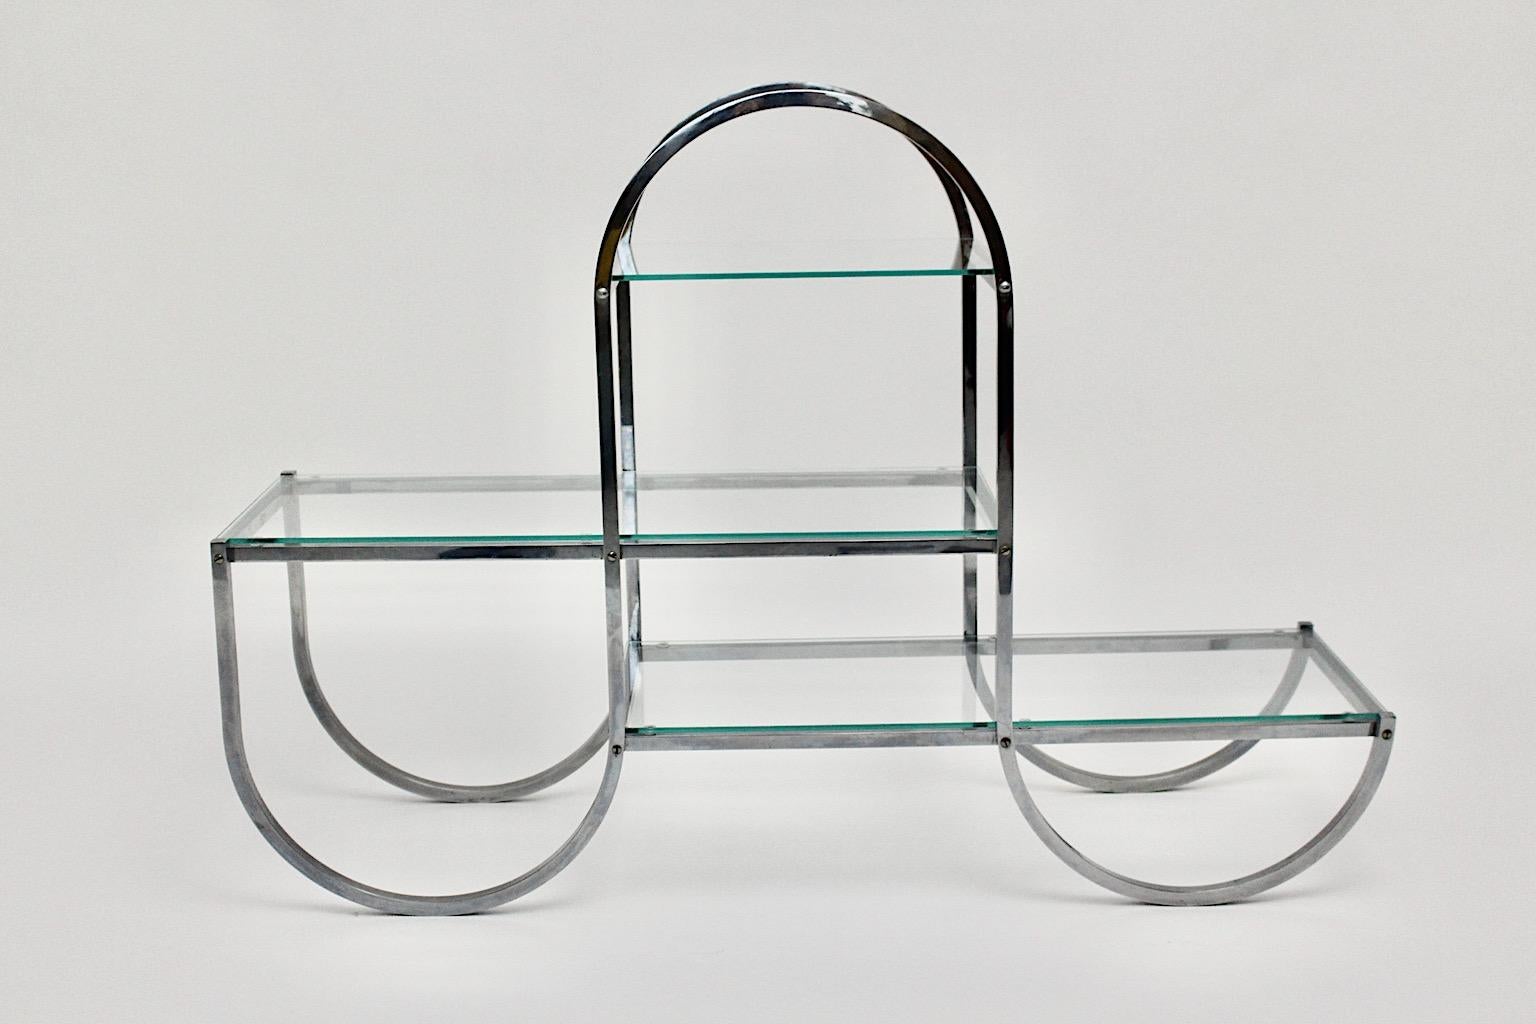 Porte-fleurs Art Déco Bauhaus vintage ou porte-livres ou séparateur de pièce ou étagères en métal chromé et plaques de verre transparent, qui a été conçu dans les années 1930, Allemagne.
Le porte-fleurs présente une construction en tube d'acier